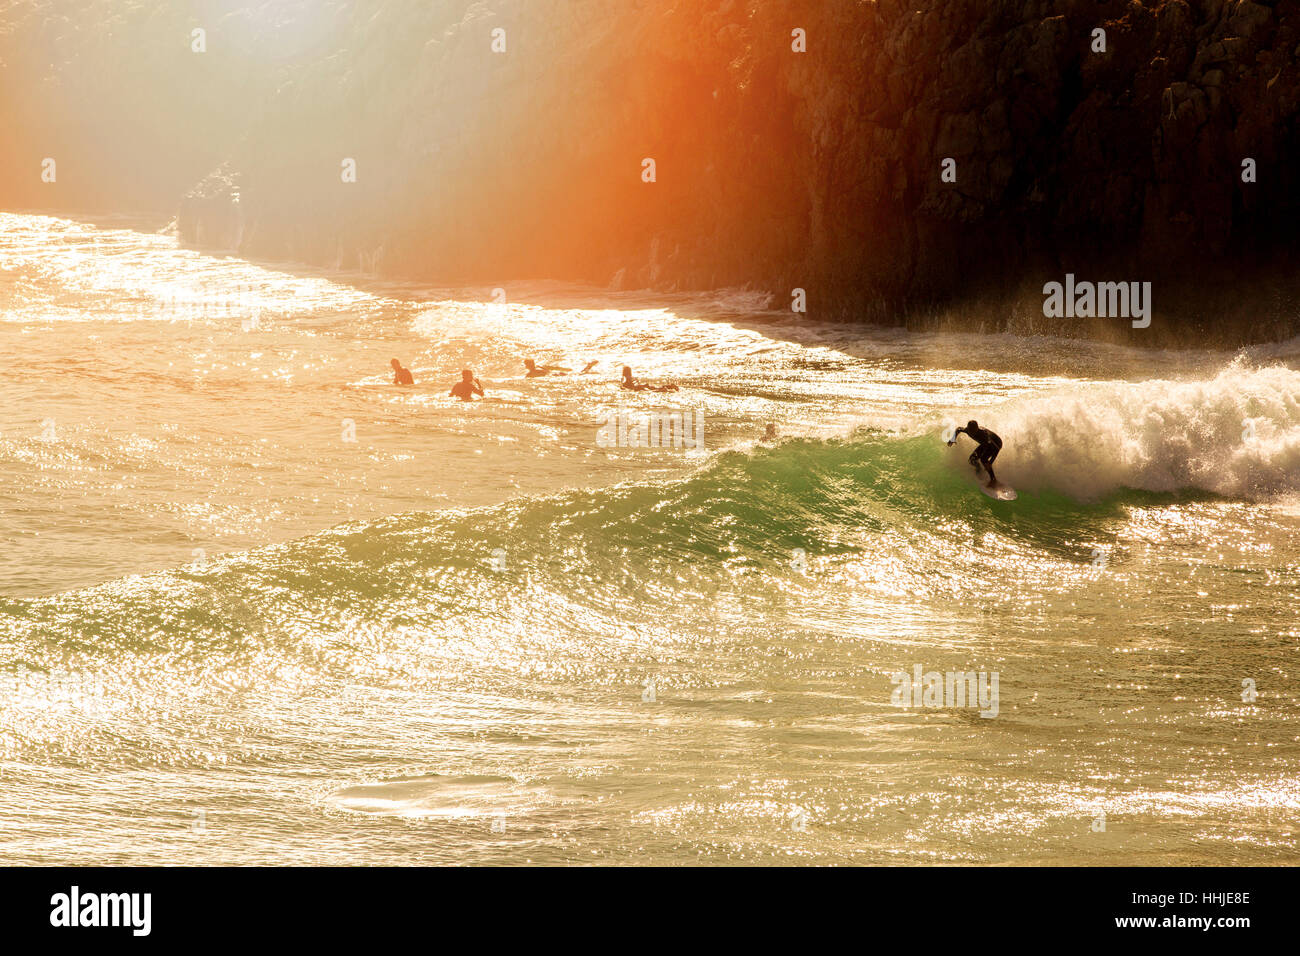 El Surf - Surf en la onda al atardecer Foto de stock